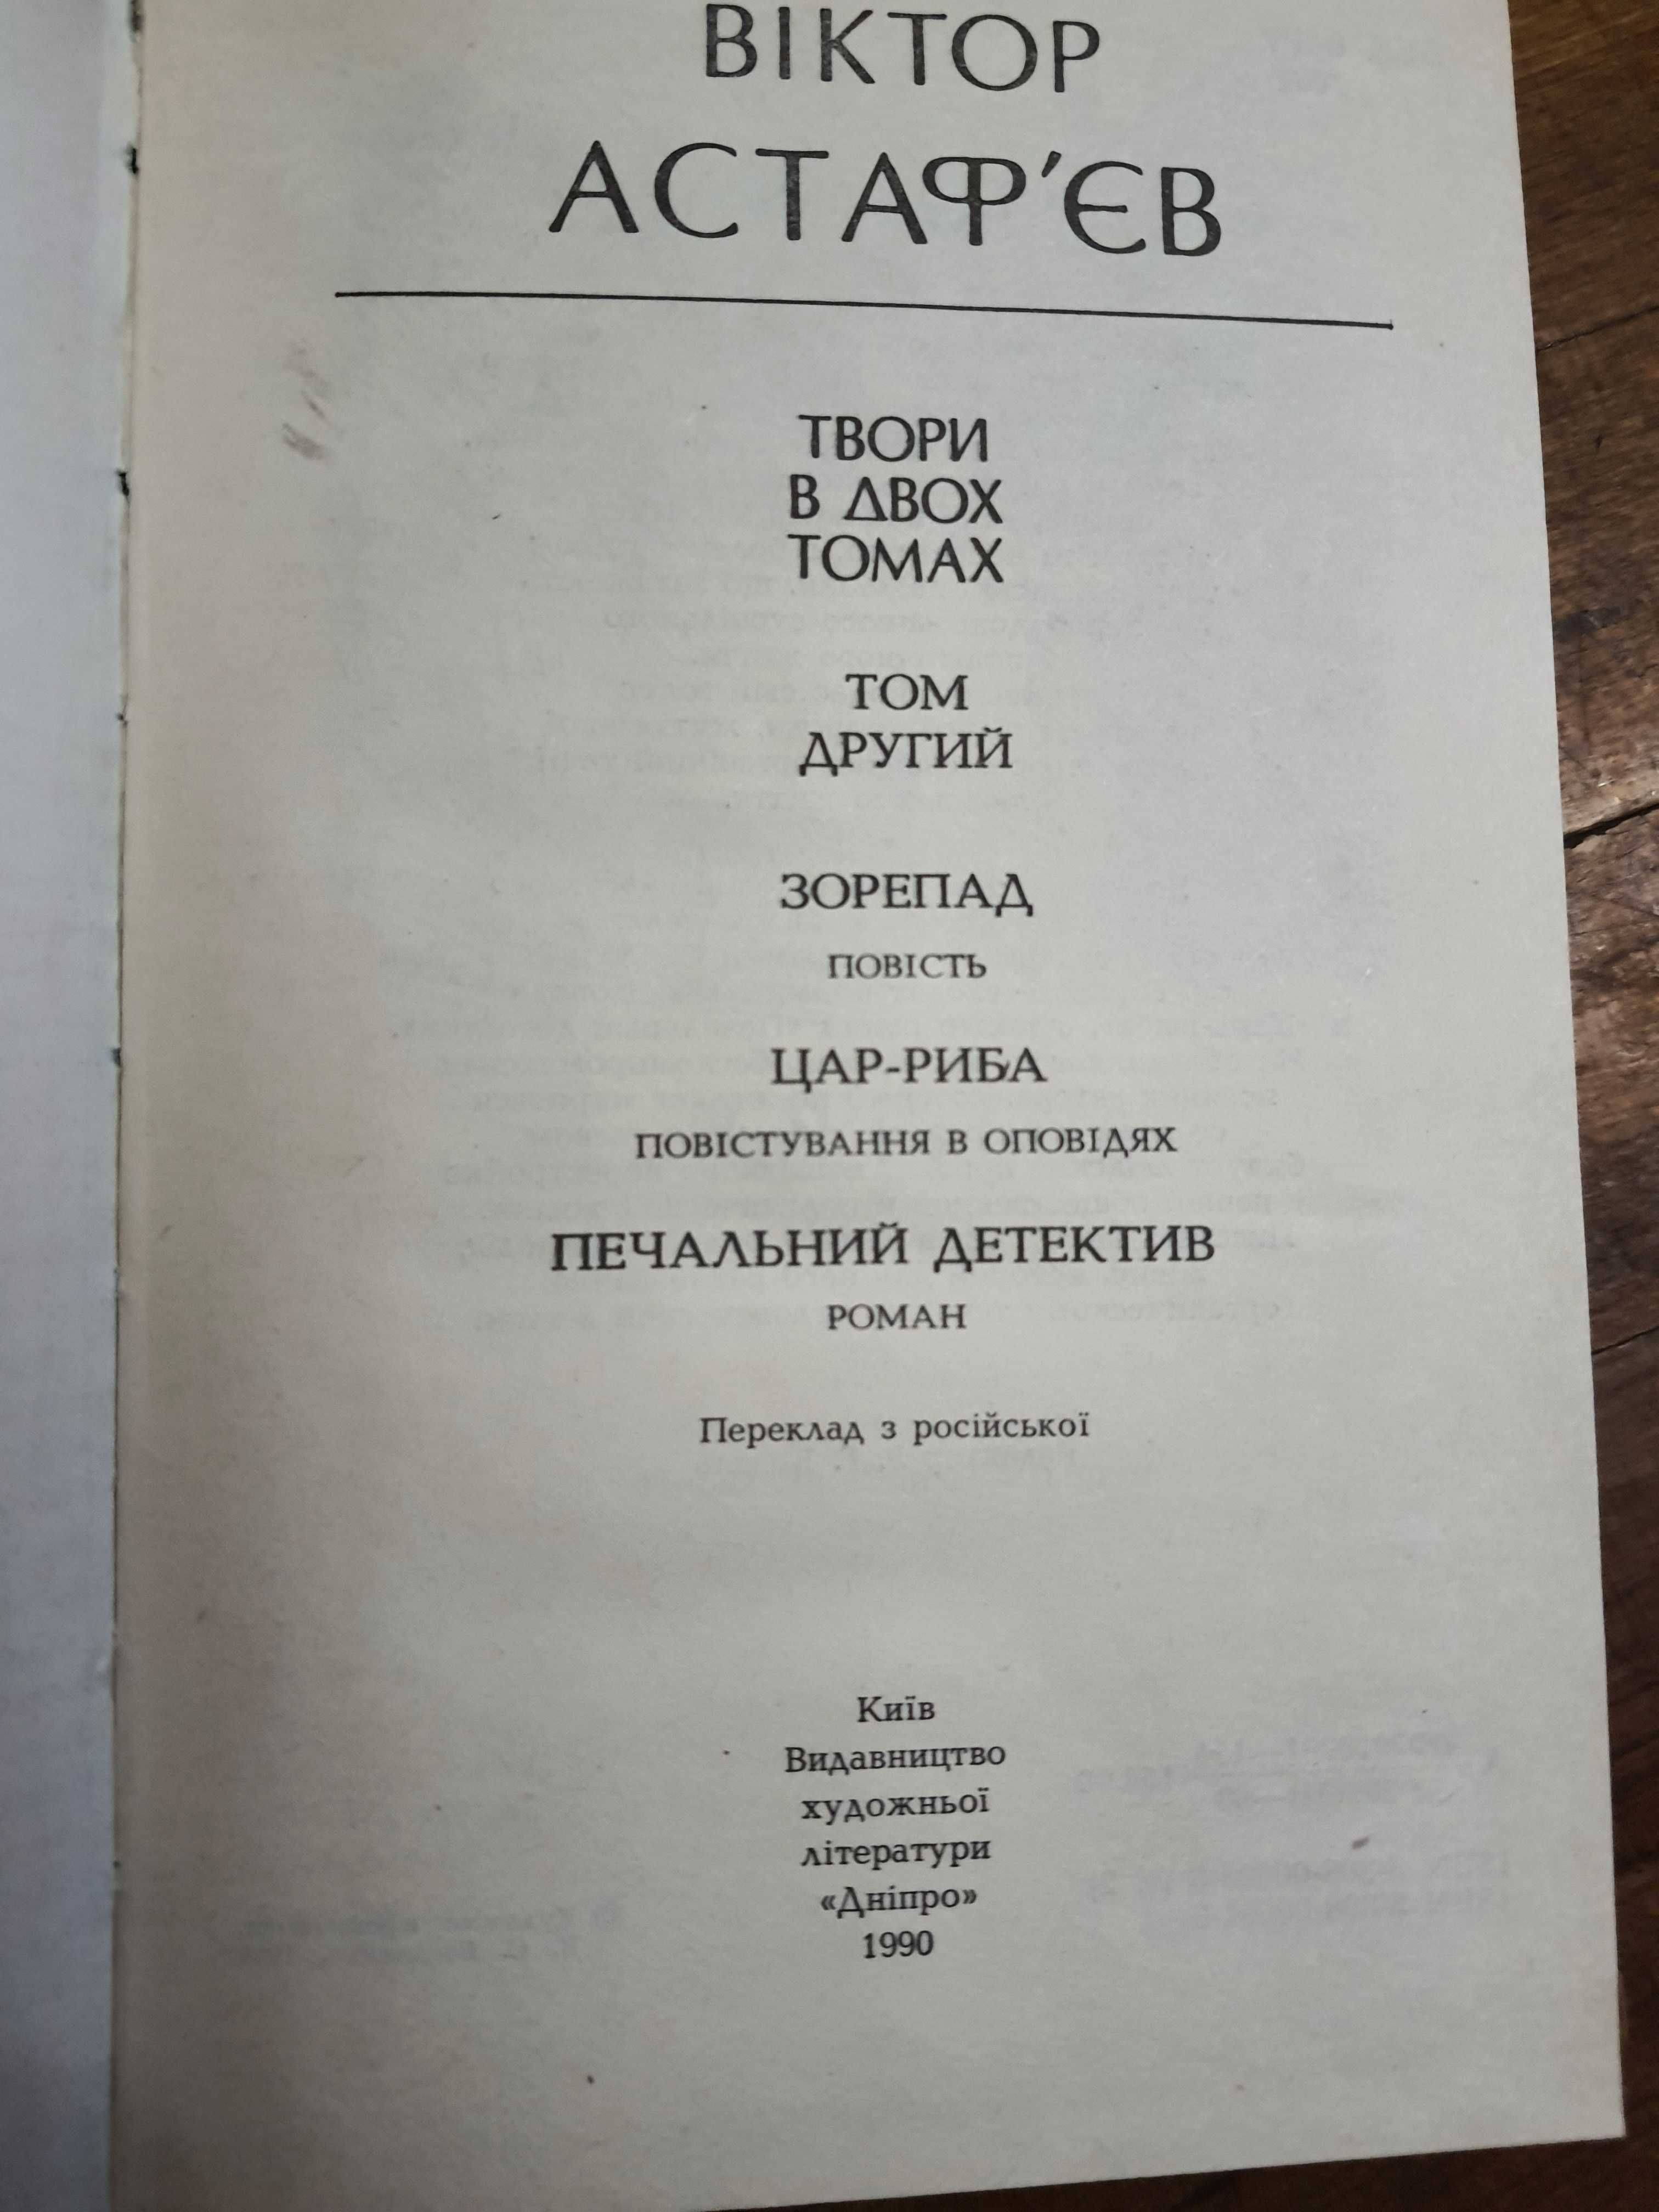 Книги Виктор Астафьев на украинском языке, 50ГPH за 2шт